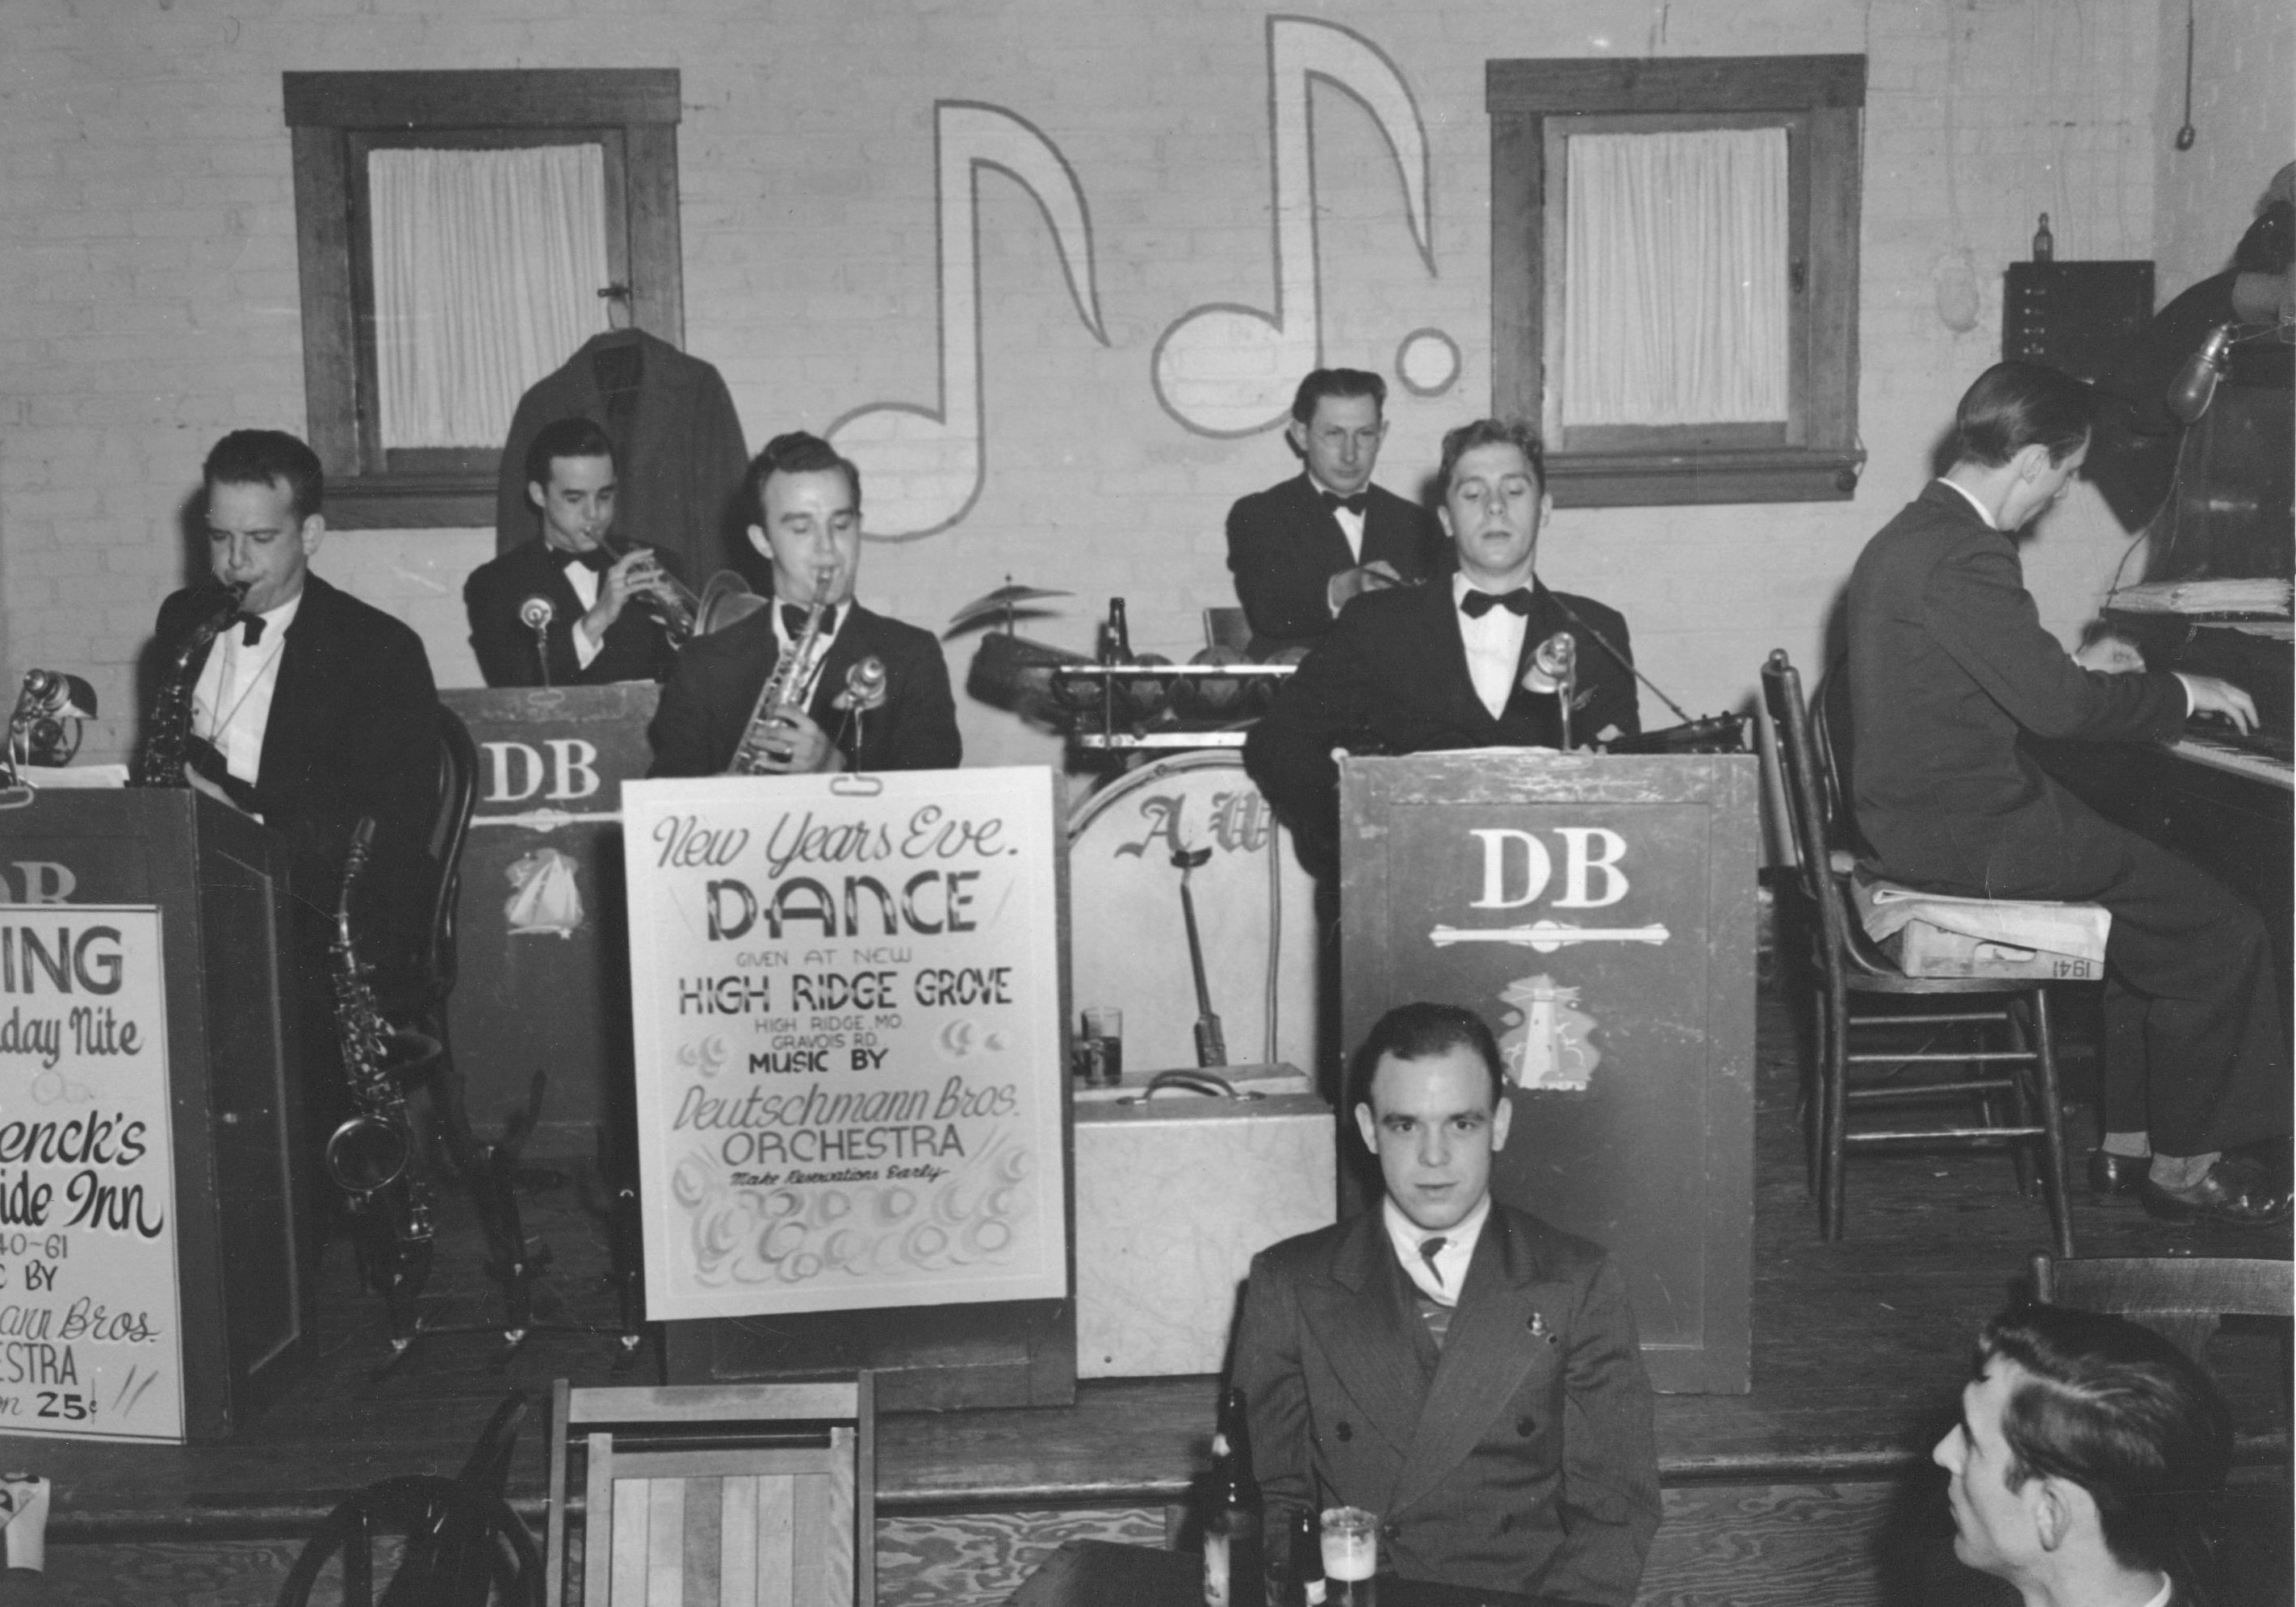 Deutschmann Brothers Orchestra Image